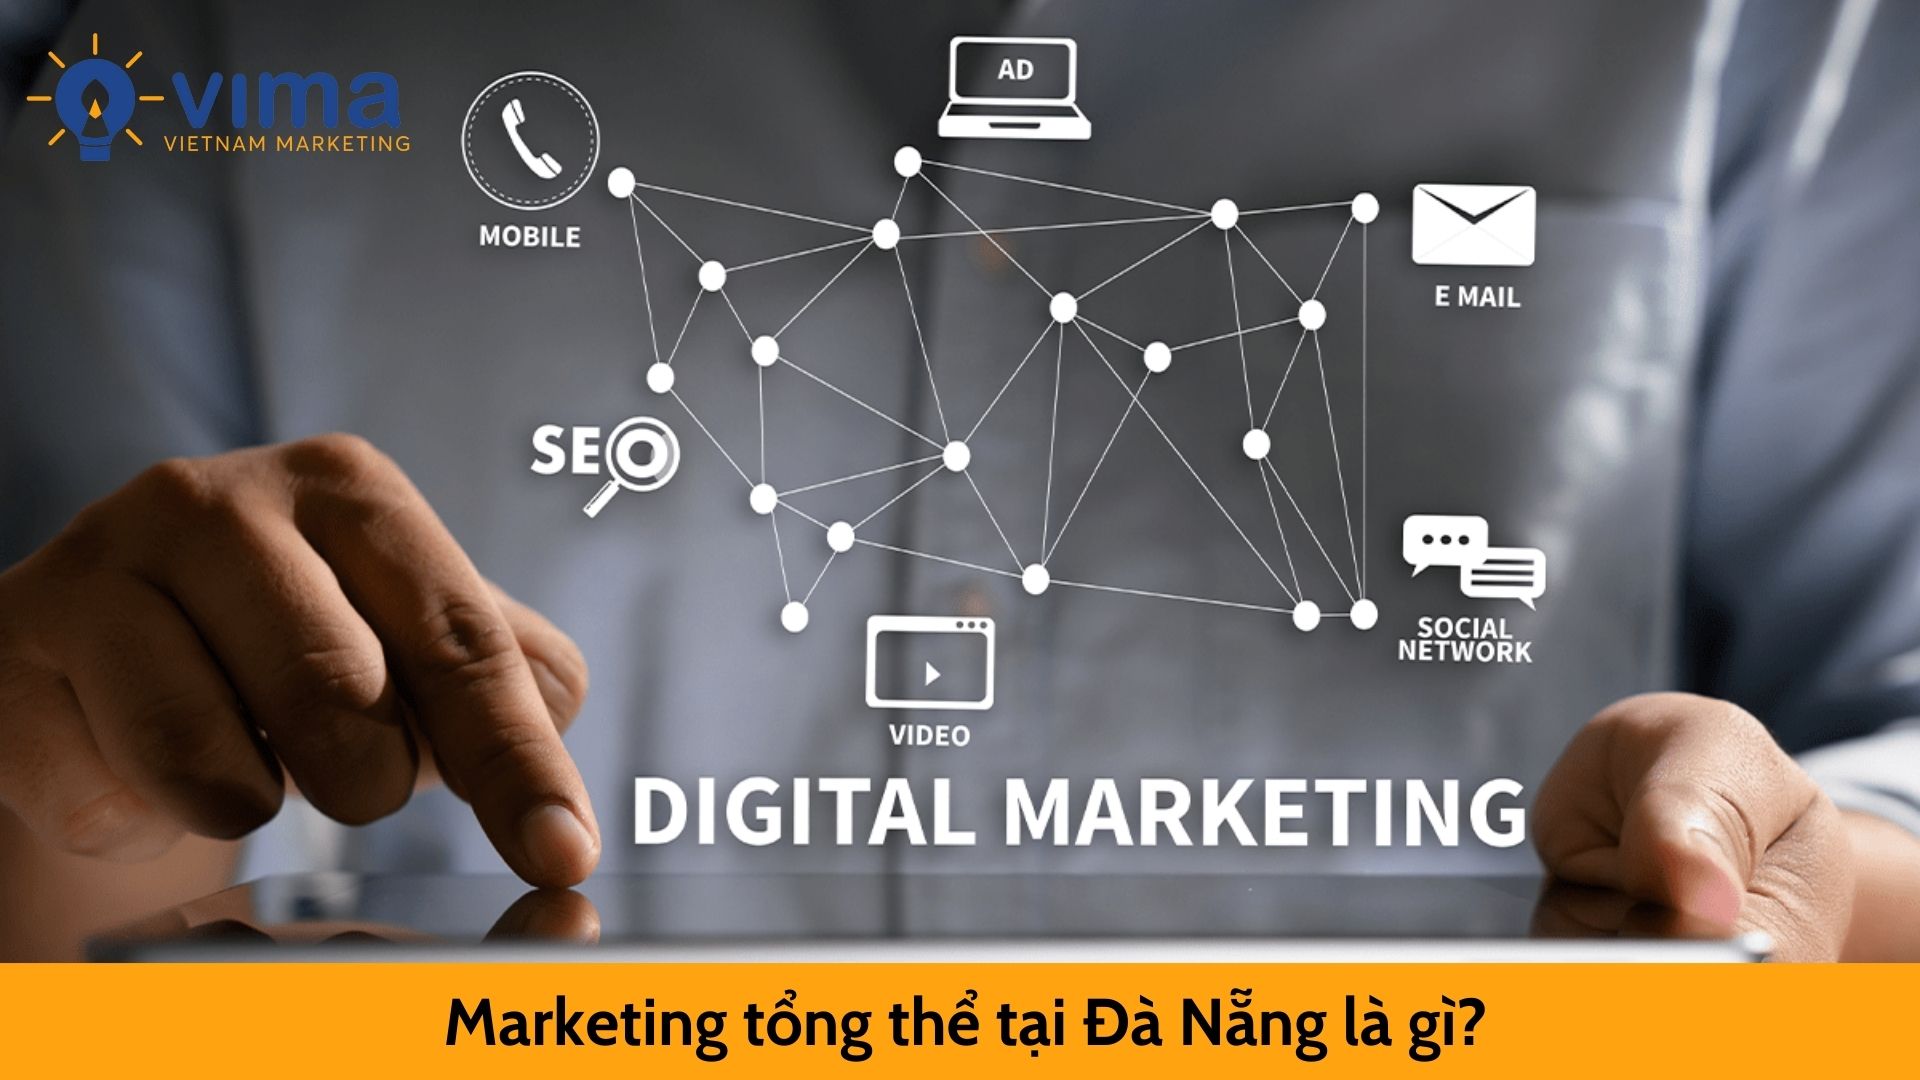 Marketing tổng thể tại Đà Nẵng là gì